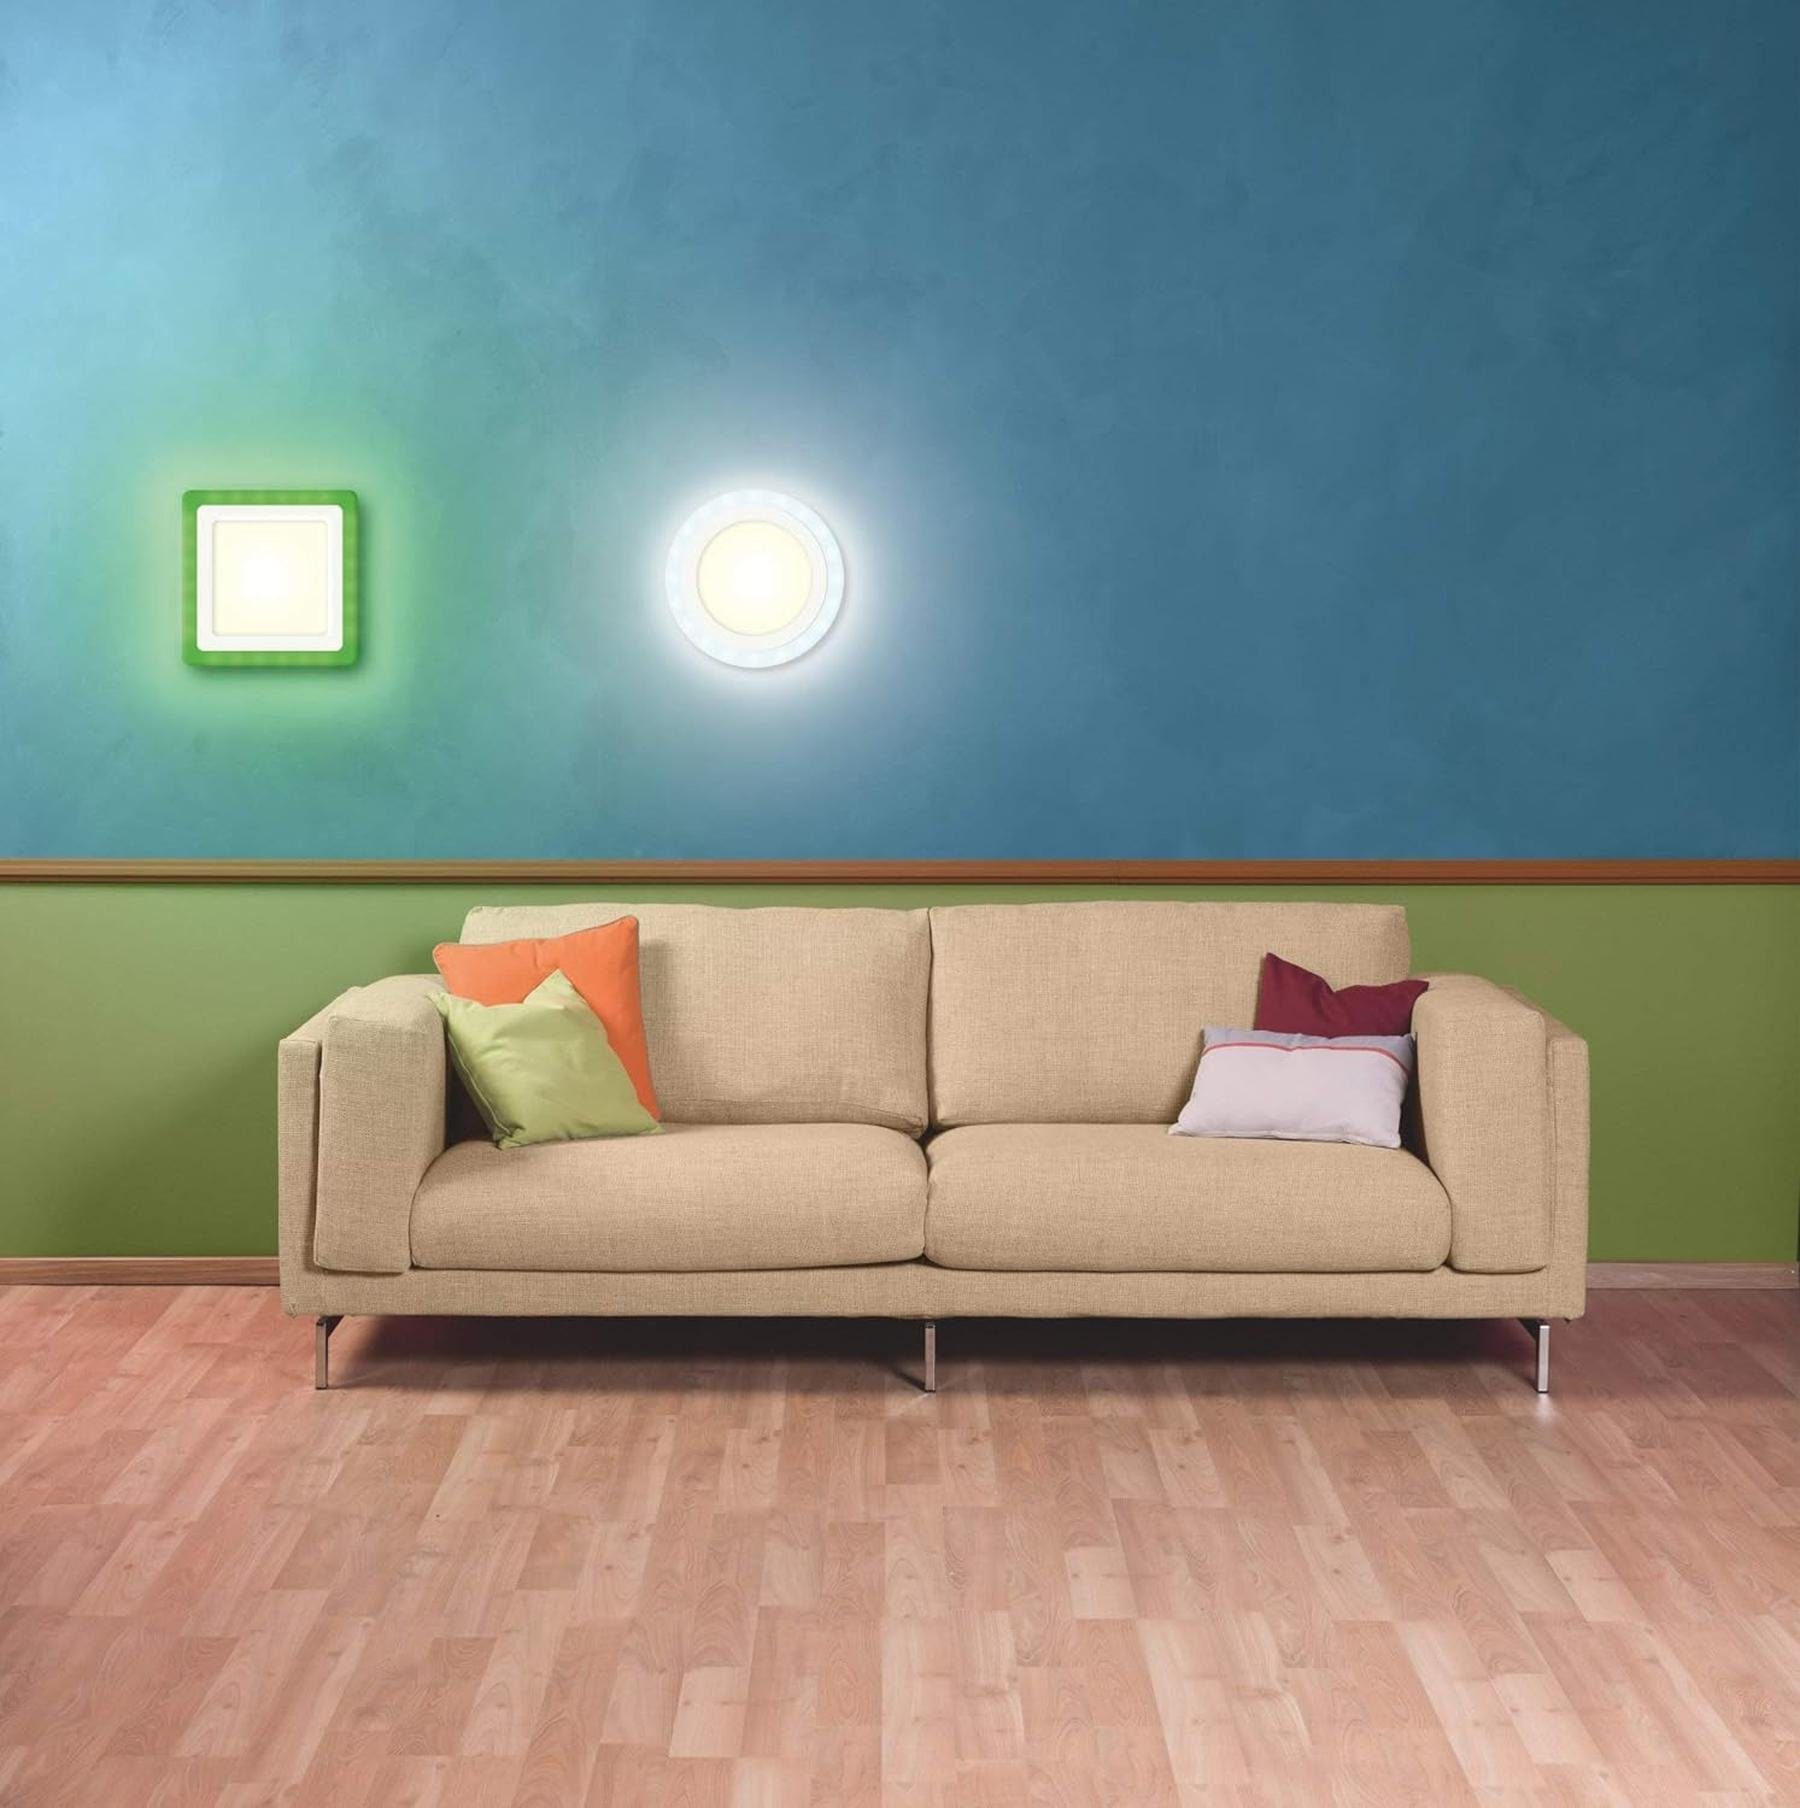 Ledvance LED Deckenleuchte RGB-Farben, und LED Wand- +, Dimmbar LEDVANCE Dekorative Deckenleuchte, RGB-Farben, Warmweiß